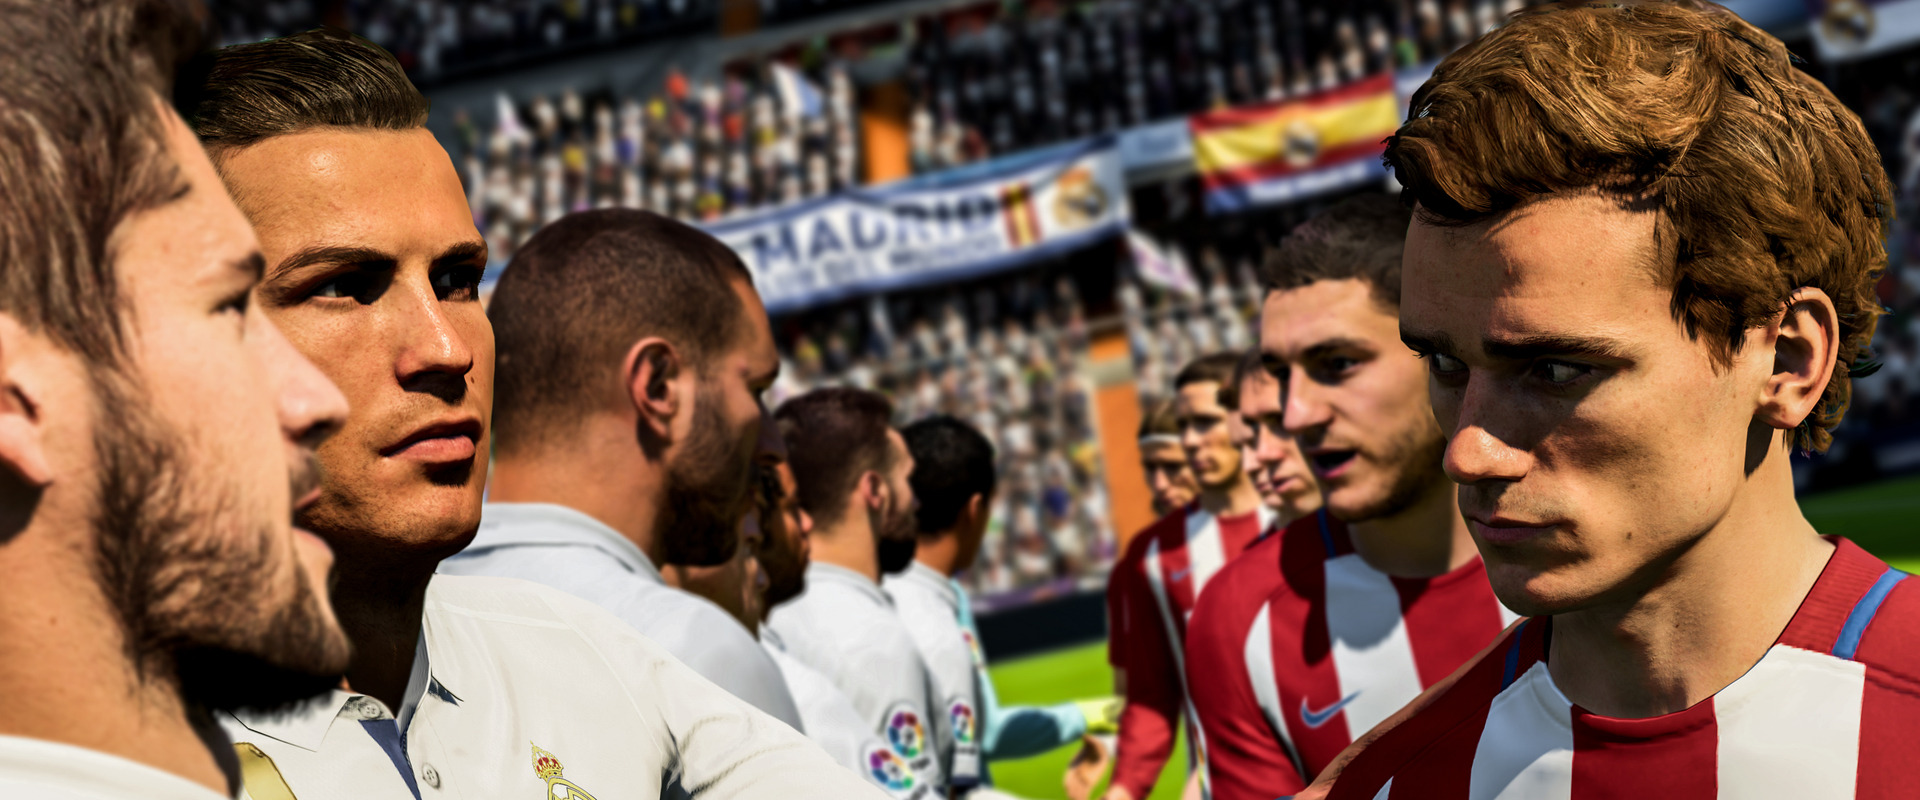 Mi lesz a FIFA18 legjobb újítása? Csere pillanatok alatt!